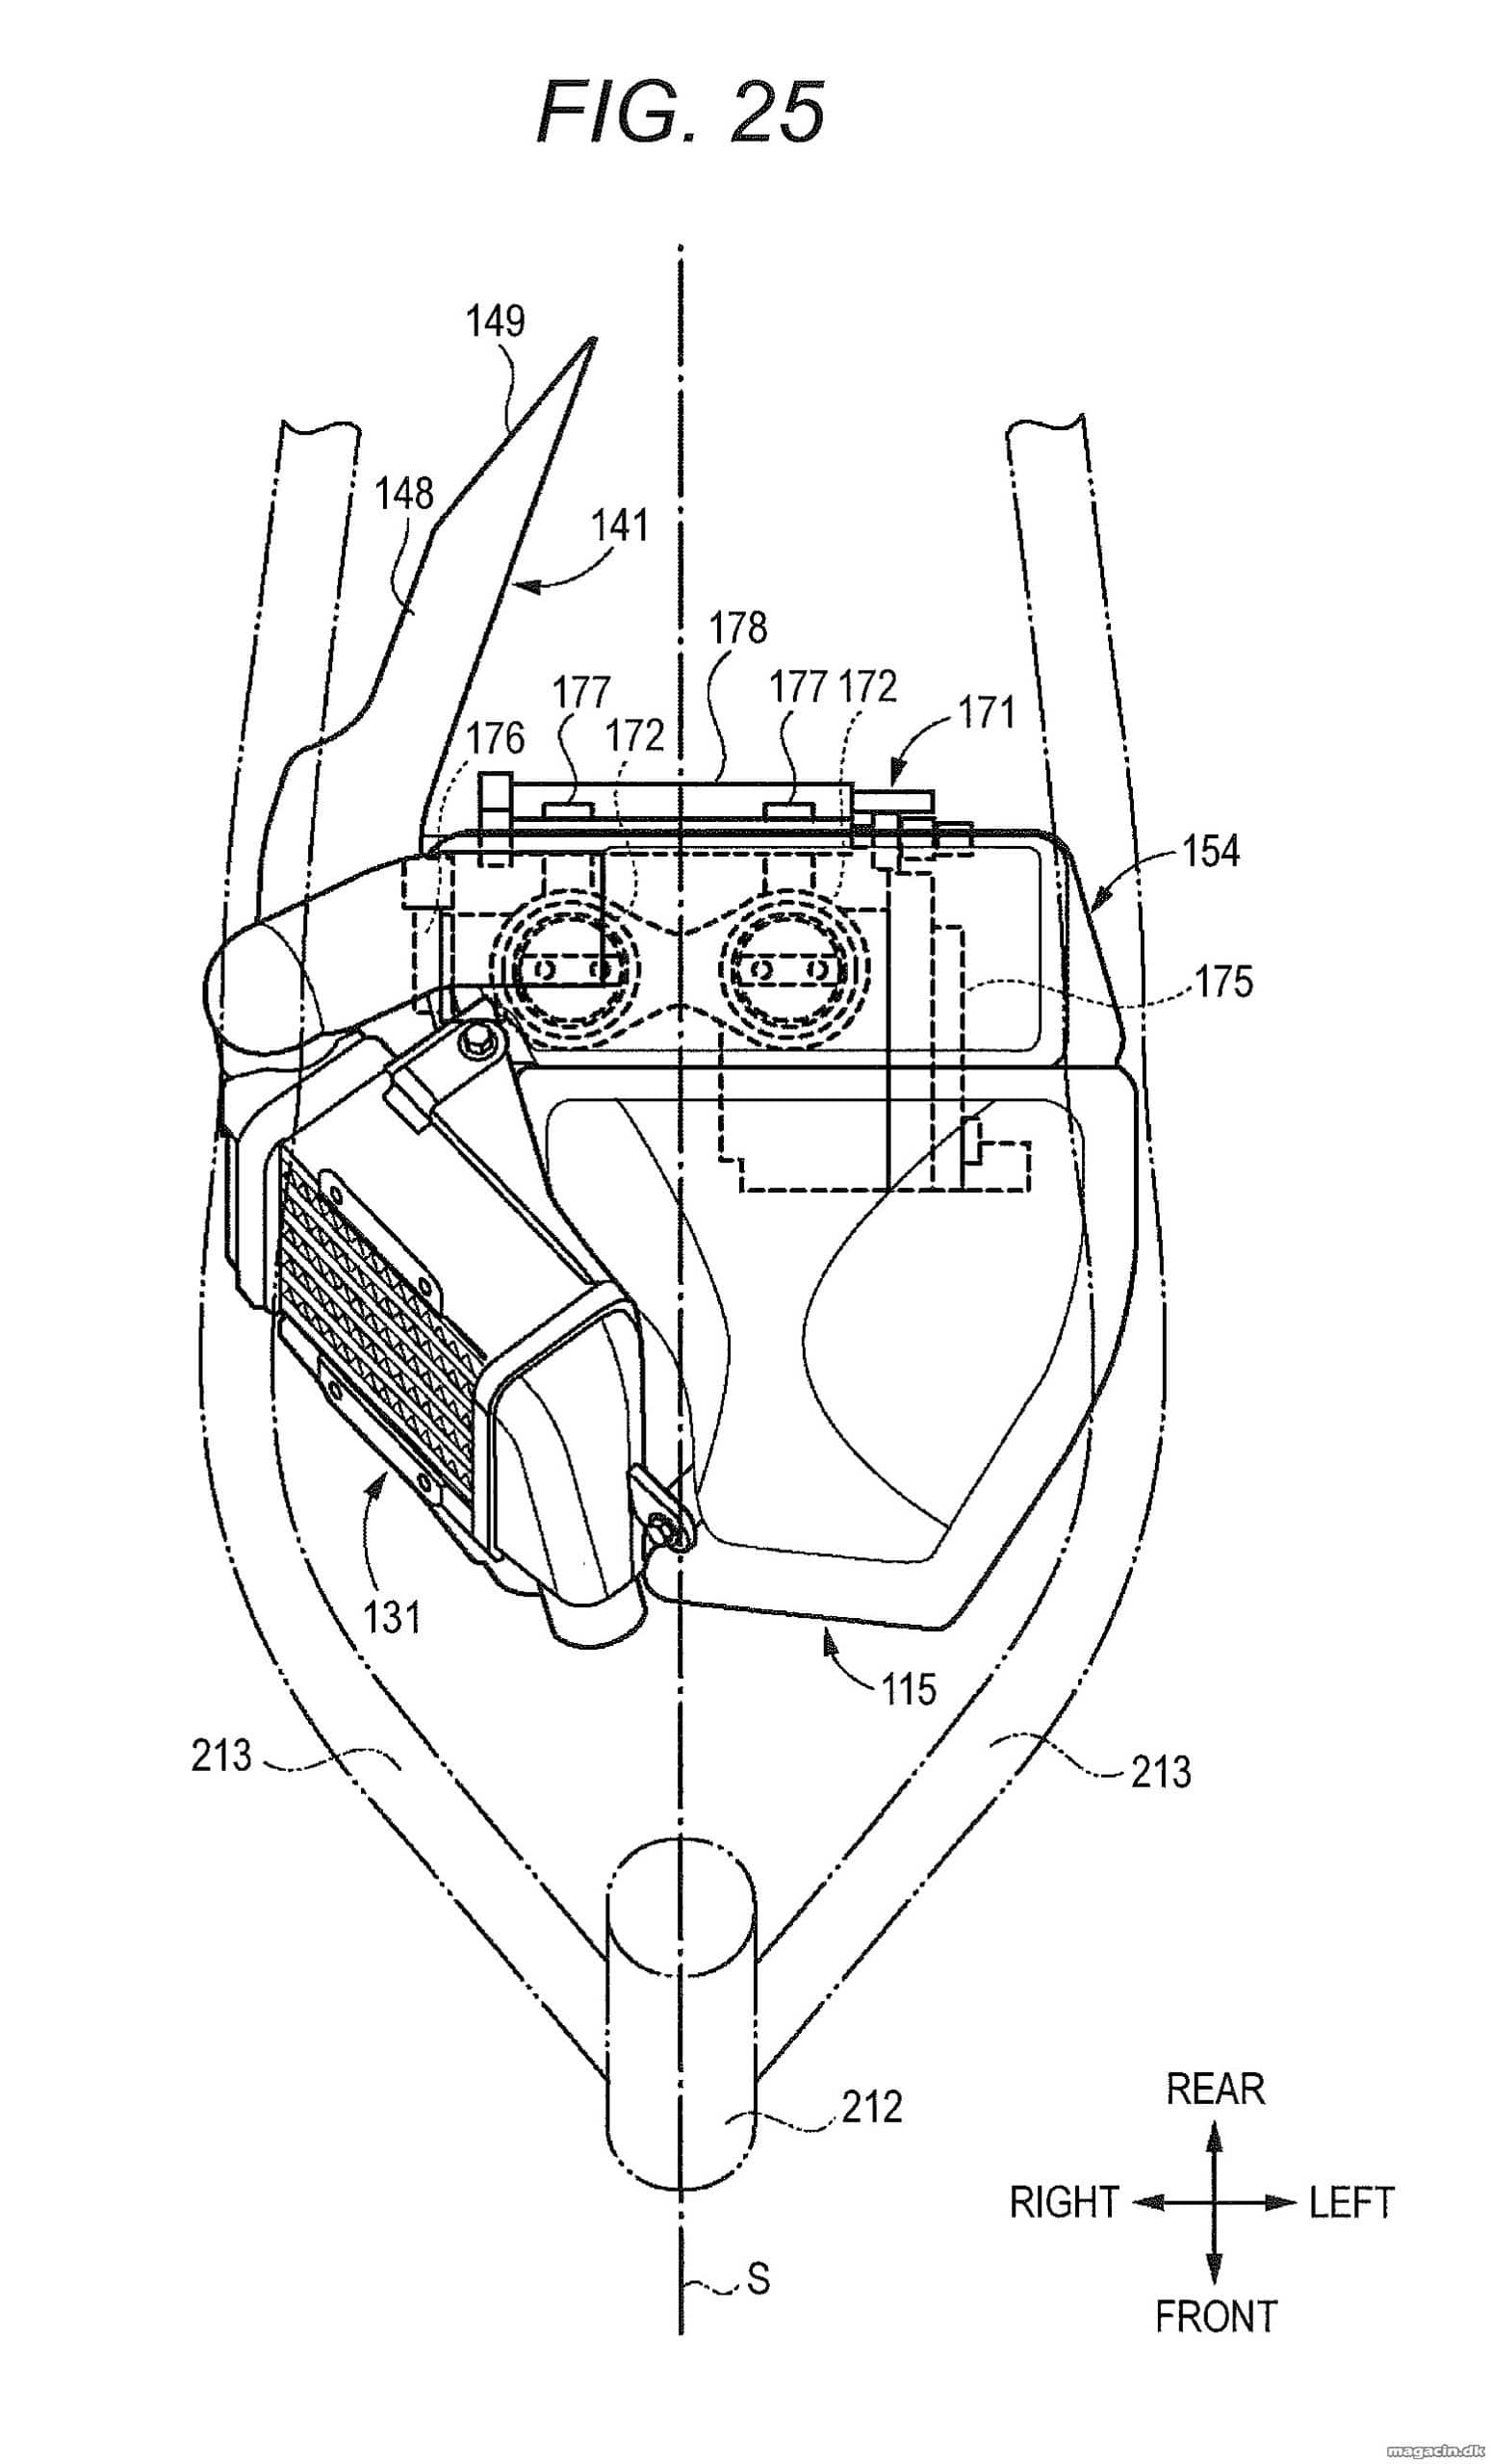 Nyt patent: hidsig Suzuki på vej